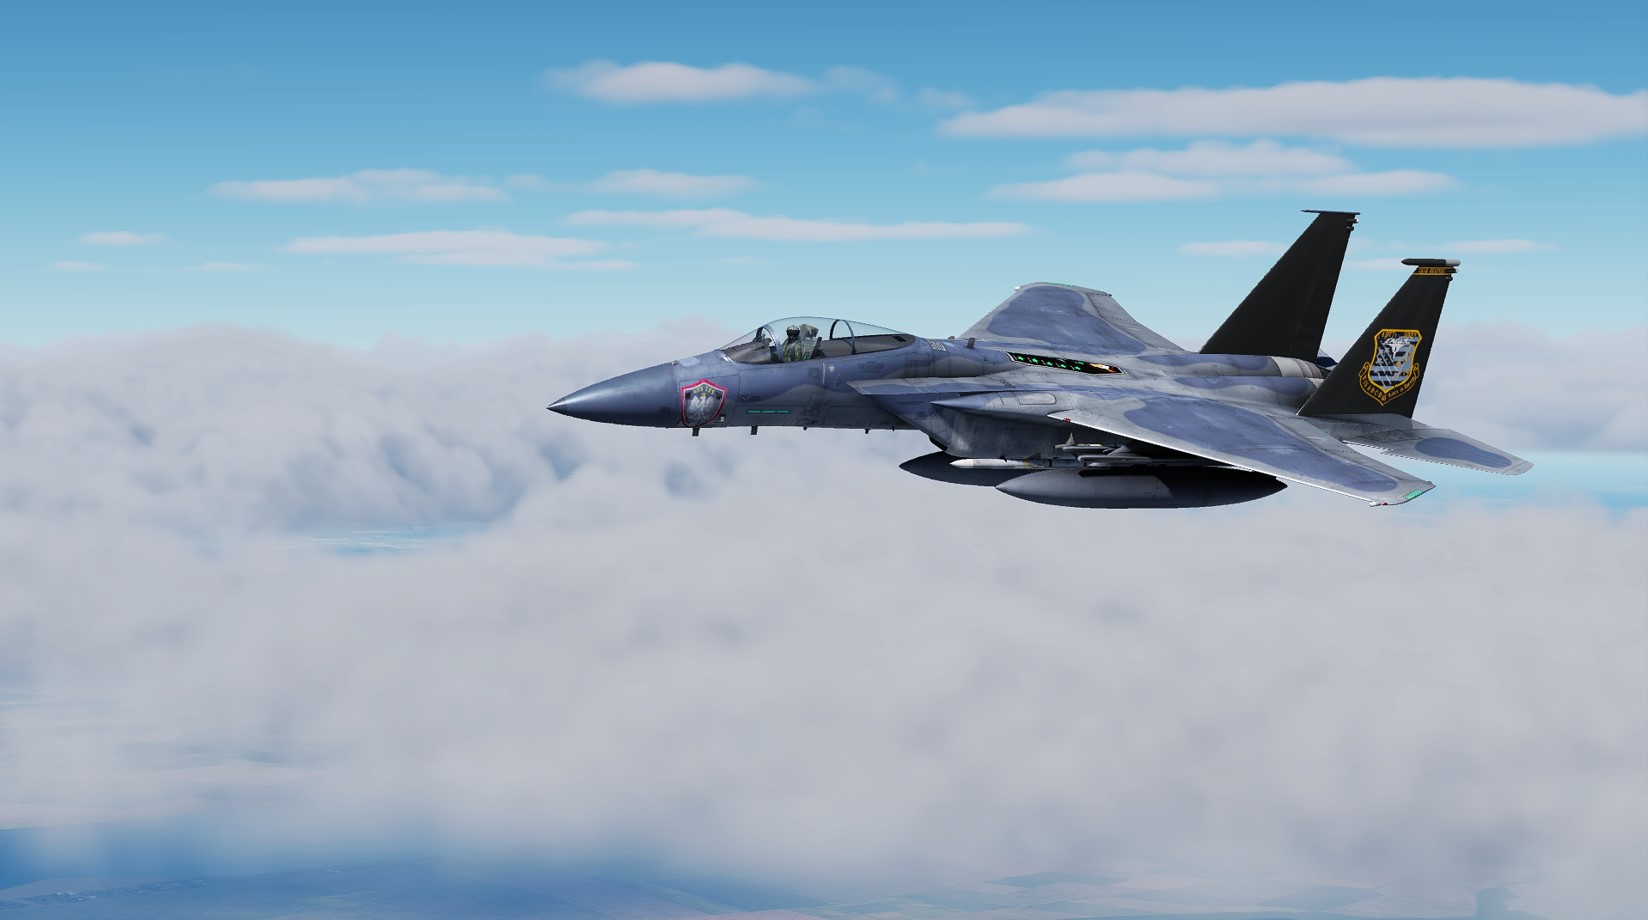 493rd Lakenheath anniversary jet "Last eagles in europe" F-15C